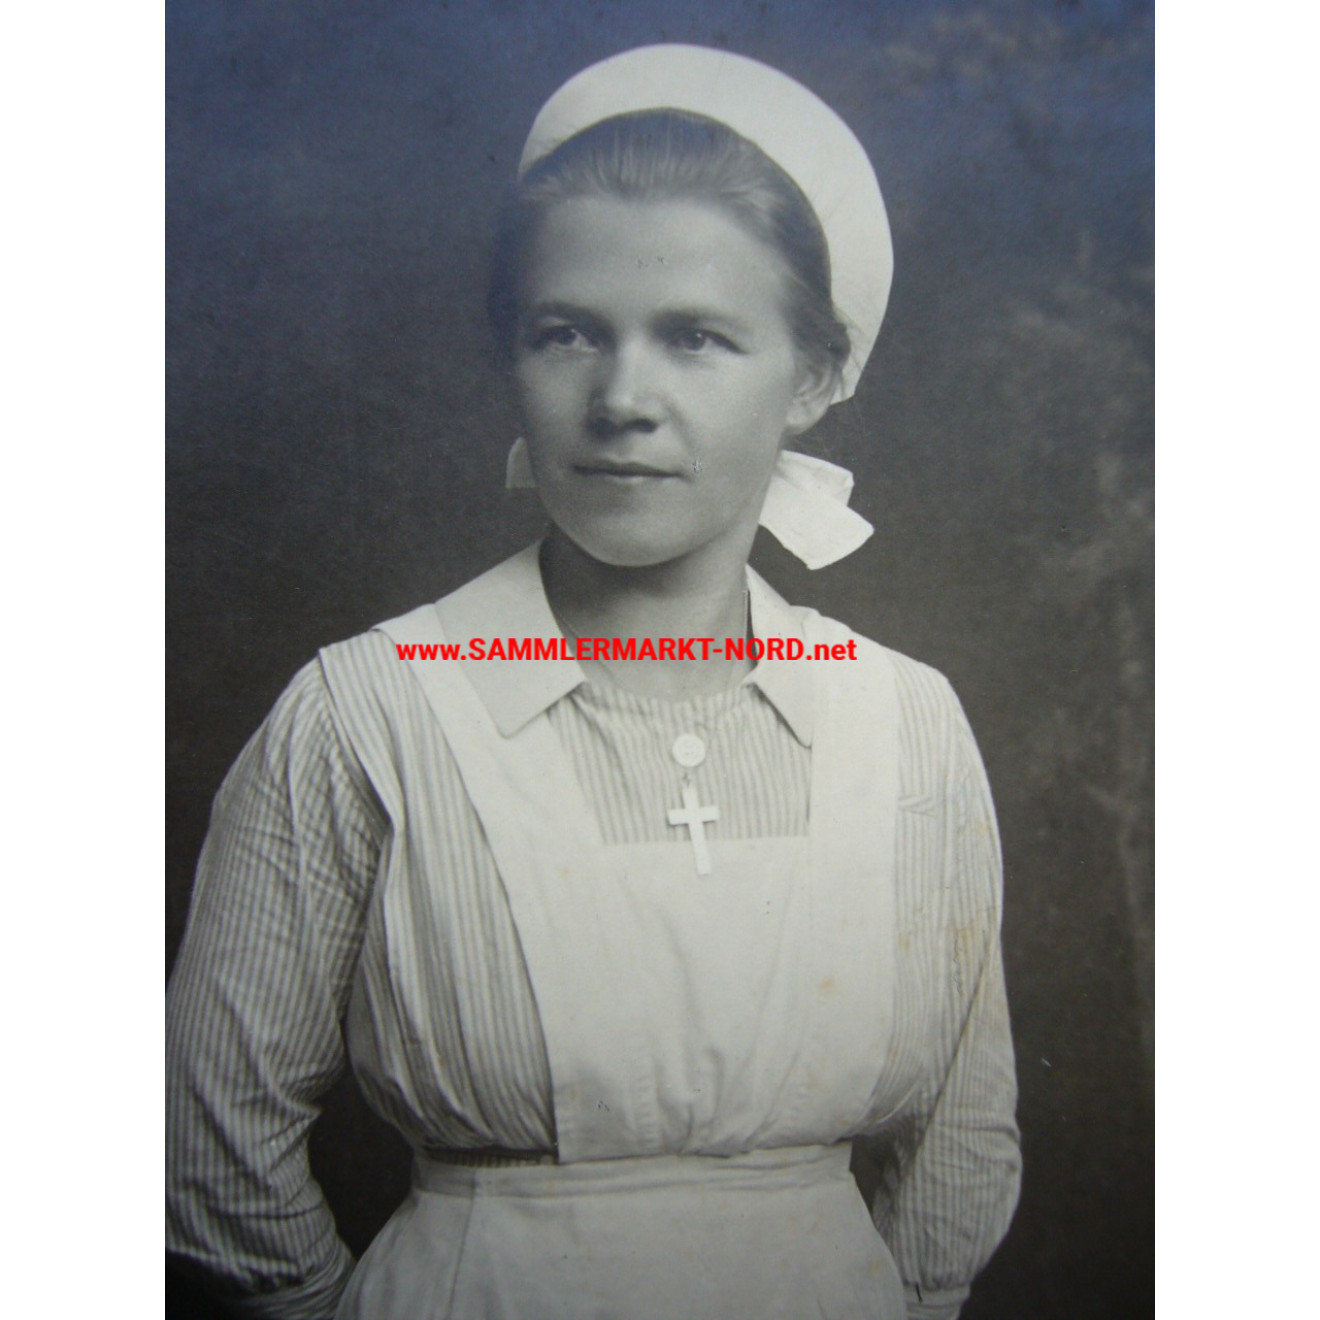 Auxiliary nurse in nurse's uniform with service cross